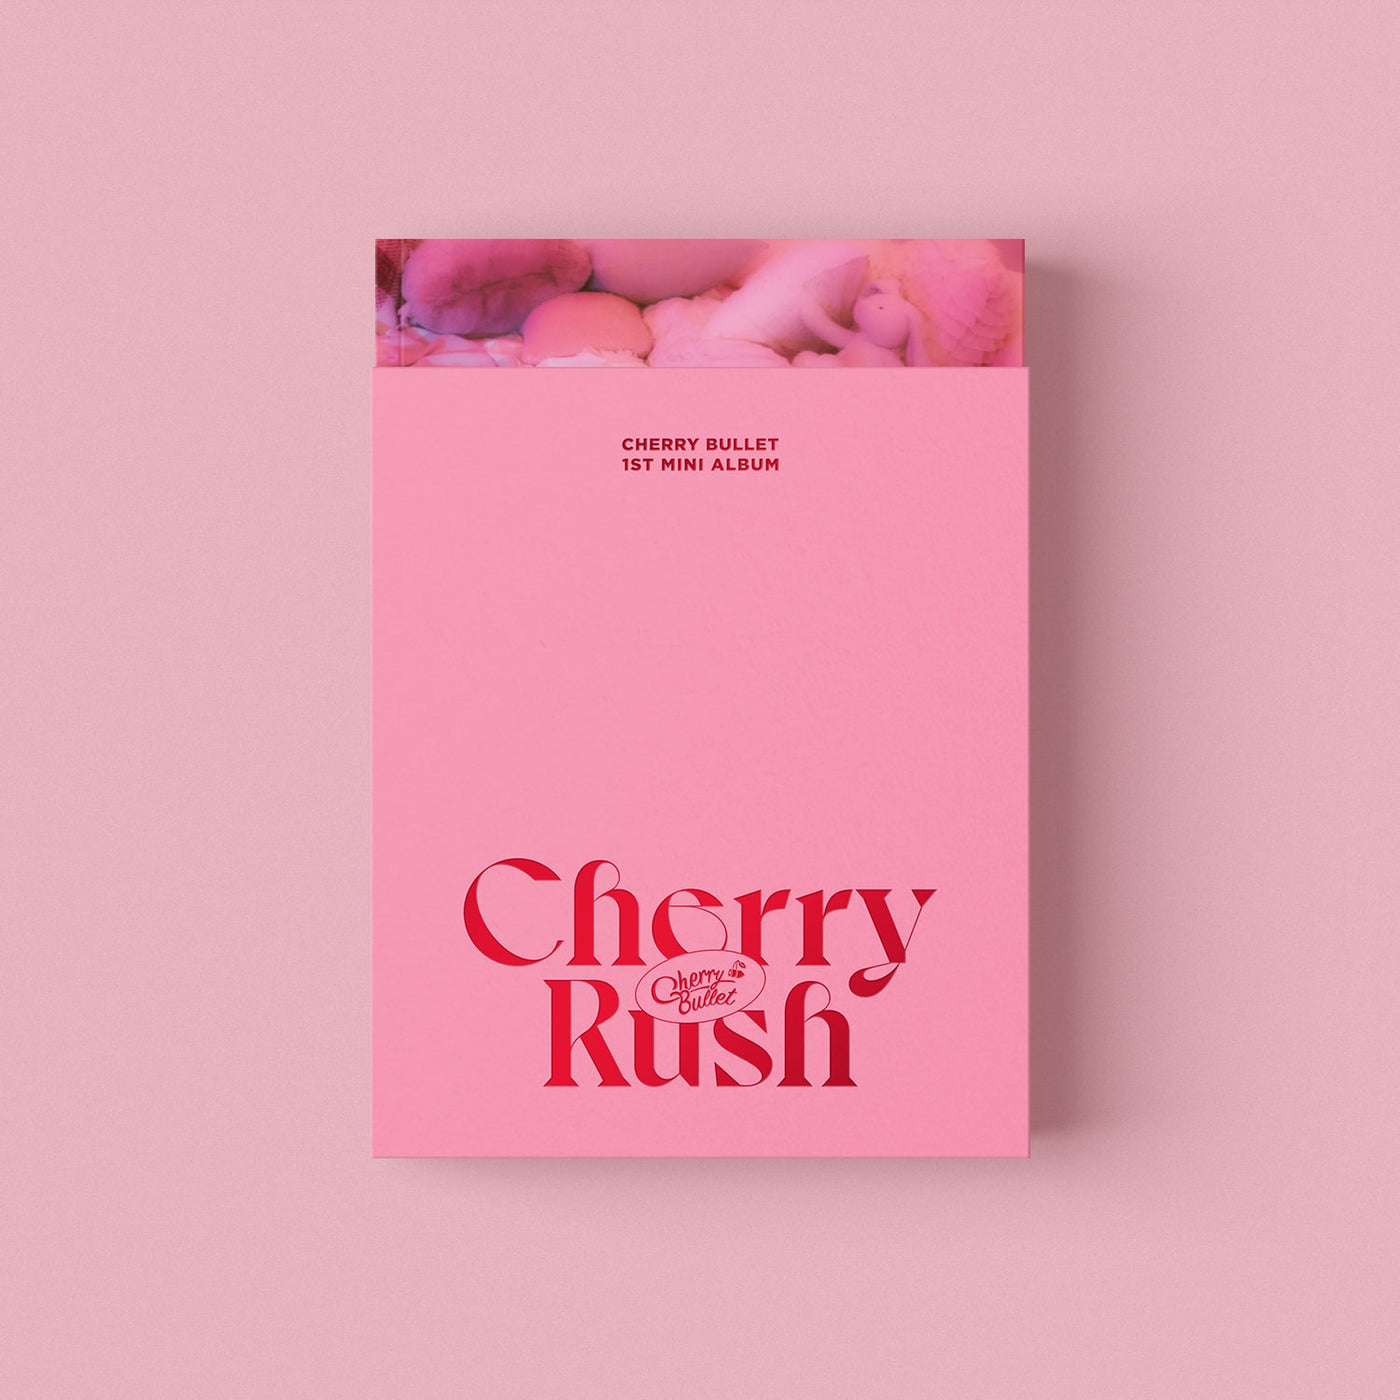 Cherry Bullet Cherry Rush 🇰🇷